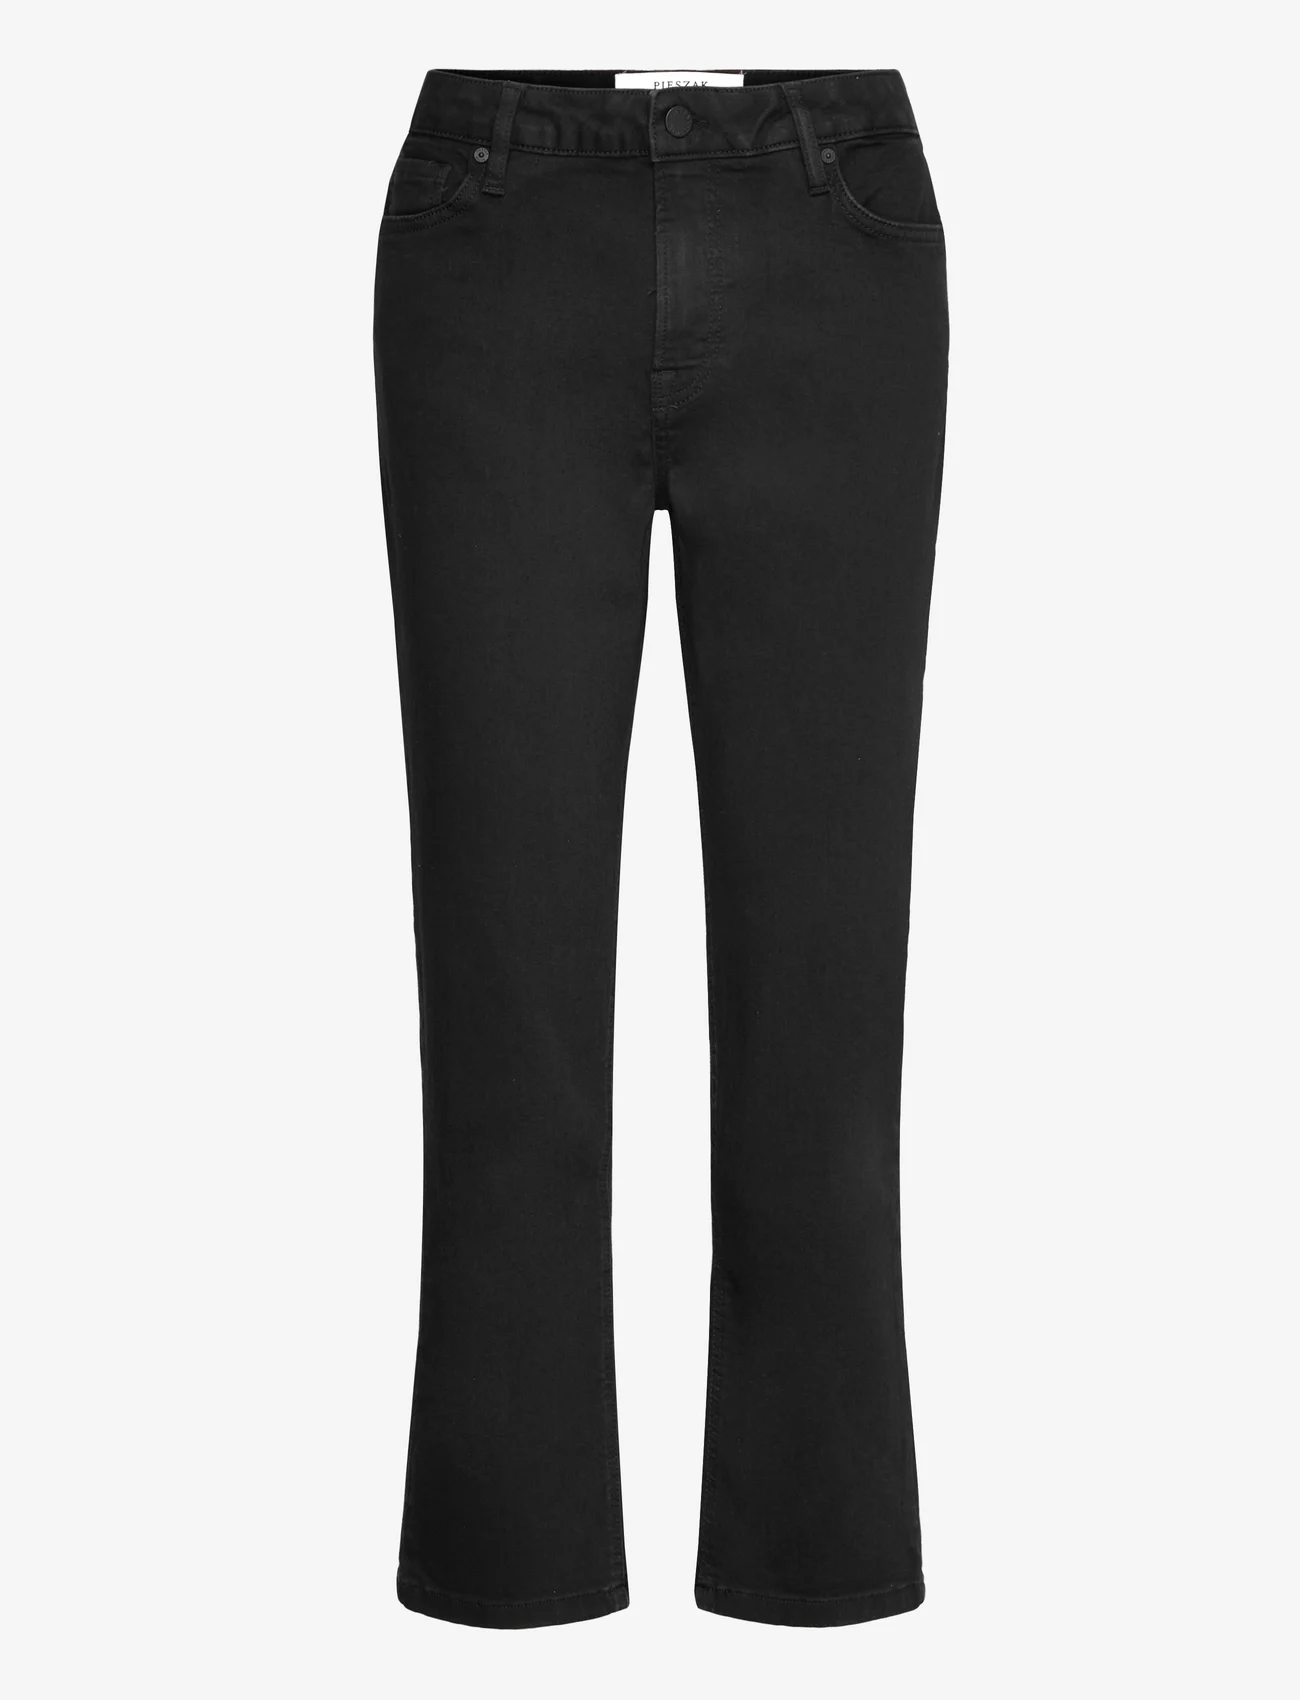 Pieszak - PD-Trisha Jeans Wash Support Deep B - straight jeans - black - 0